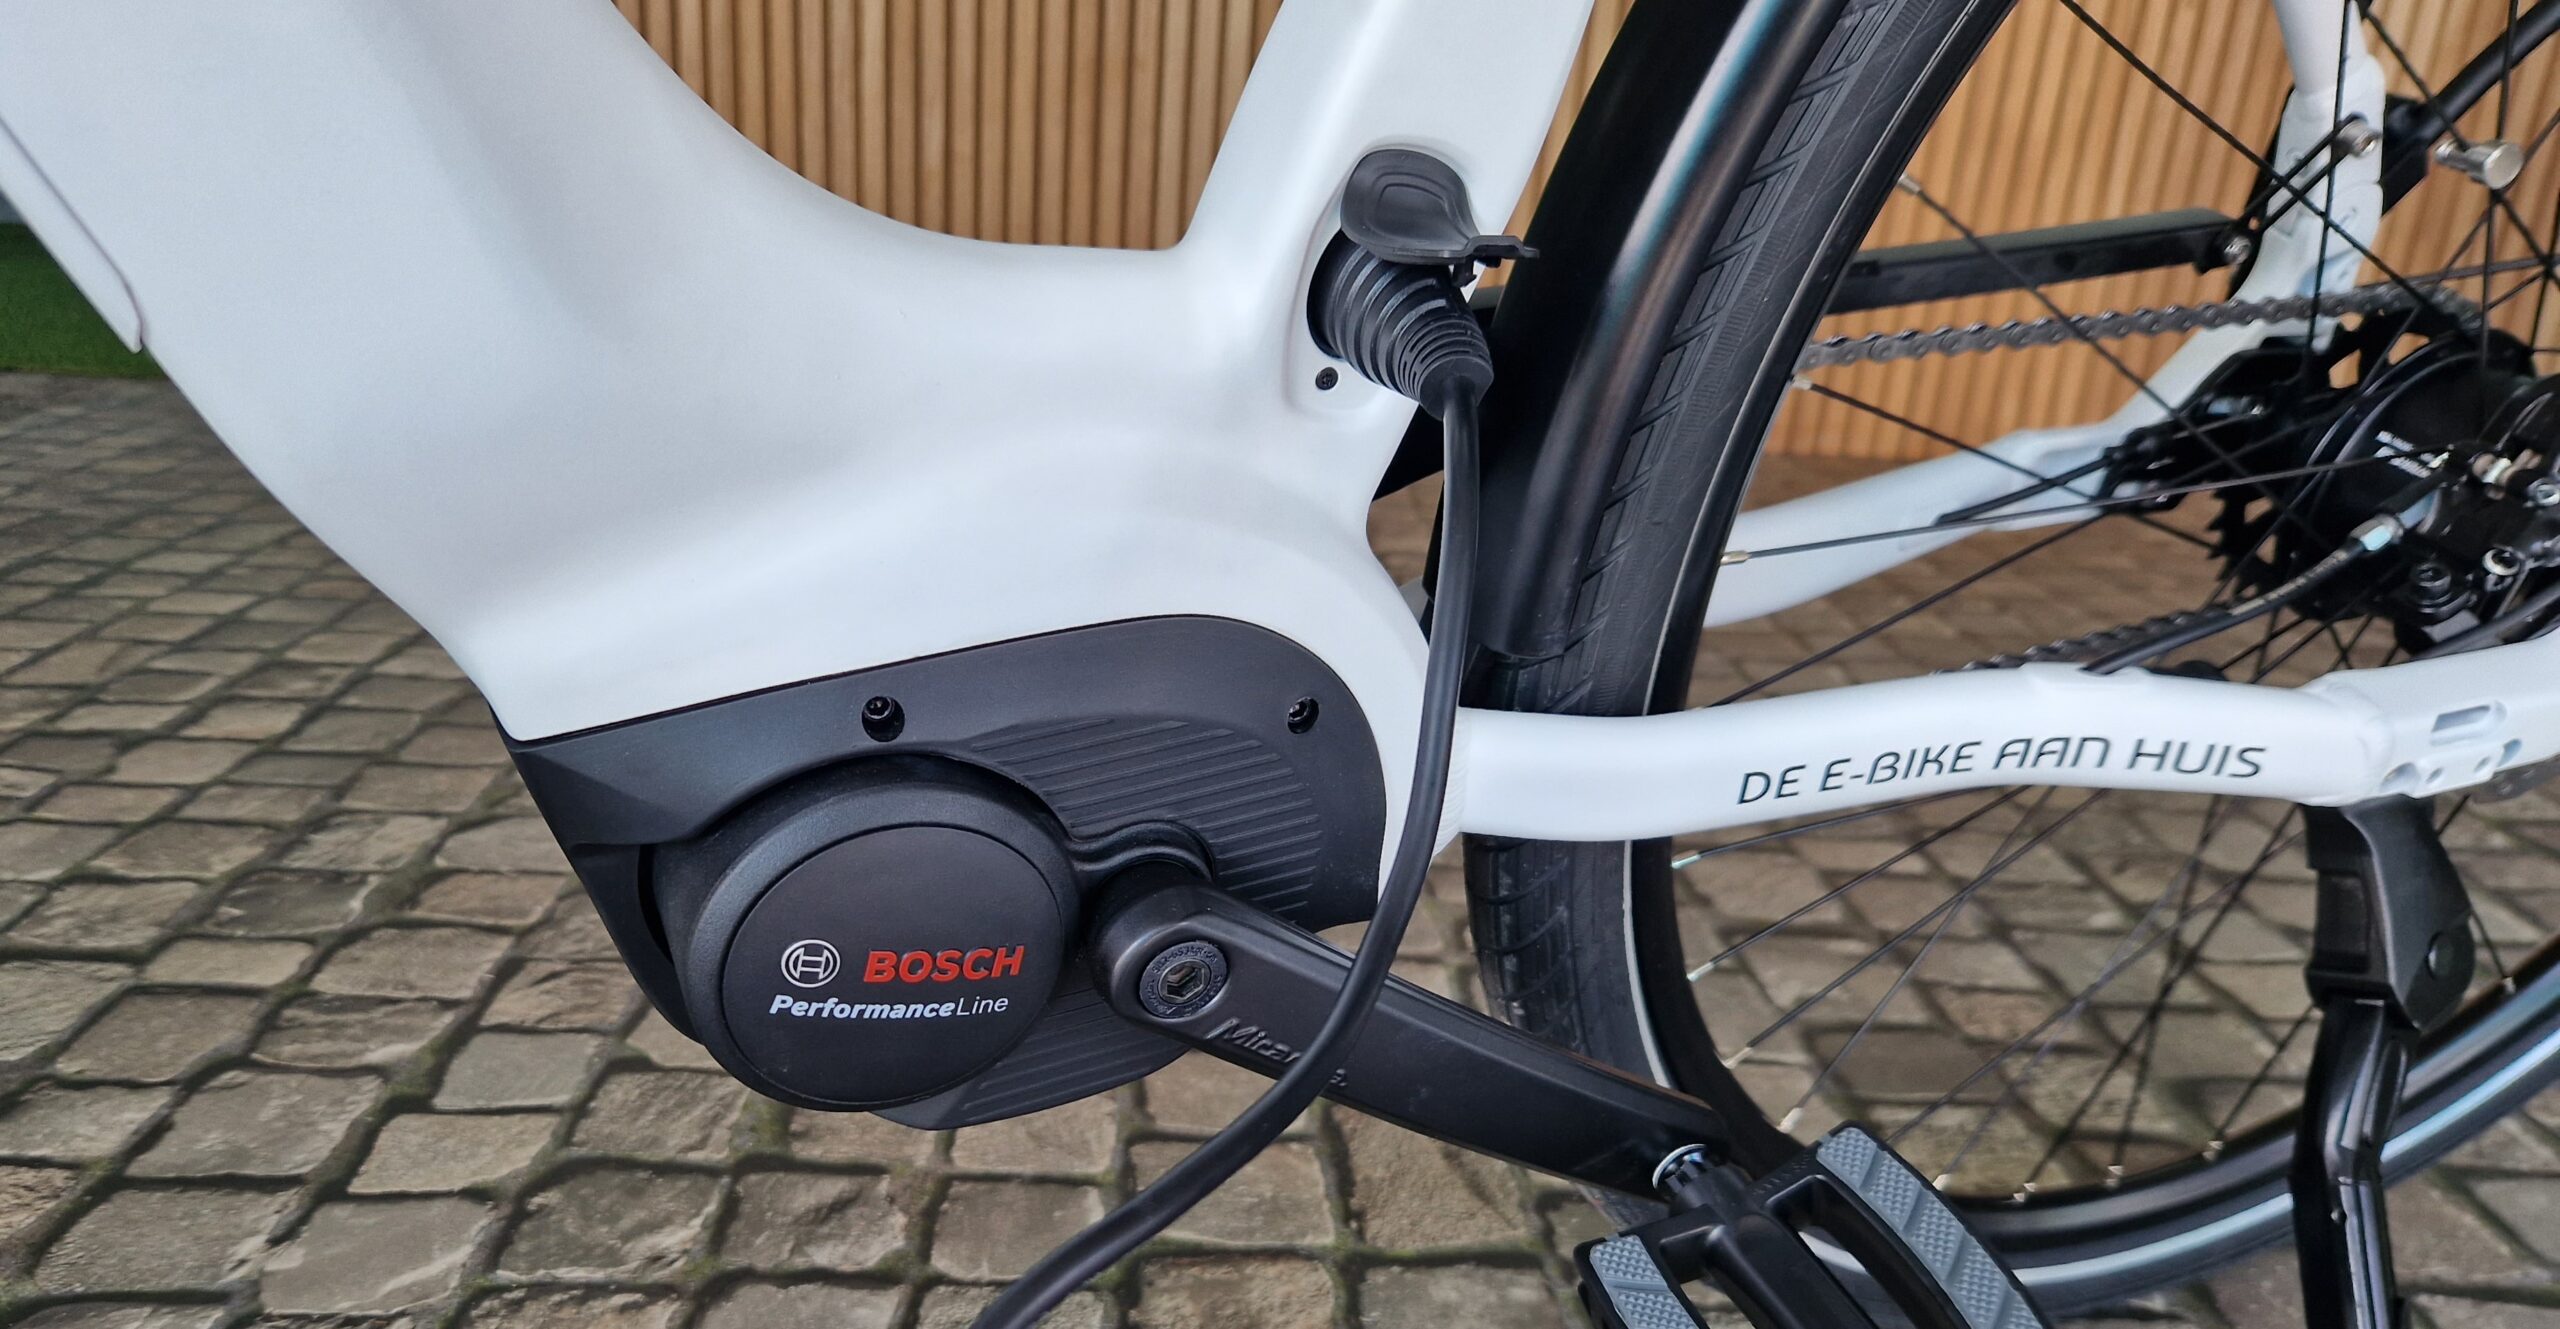 Donau Milieuvriendelijk Gehoorzaamheid Hoe lang duurt het om je e-bike op te laden? • Veeloo